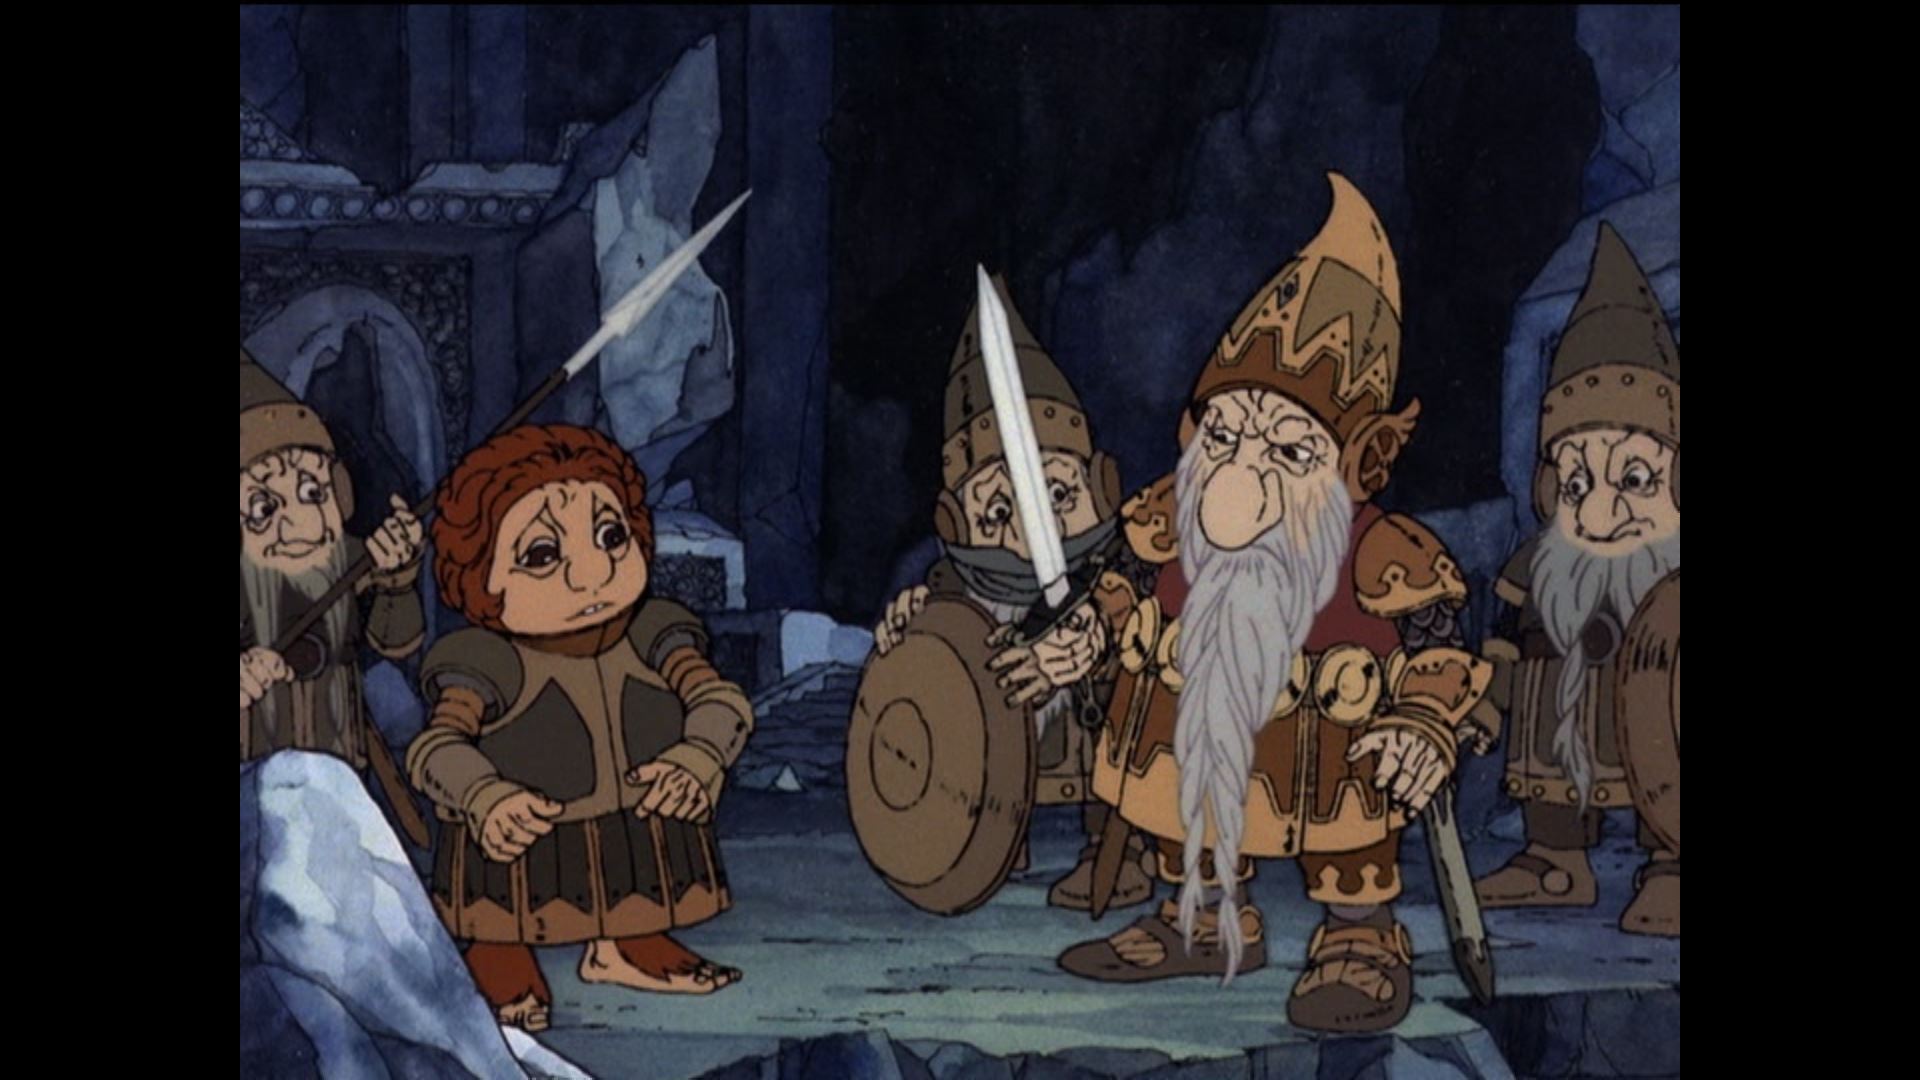 Thorin und seine Crew im (c) Rankin/ Bass "Hobbit"